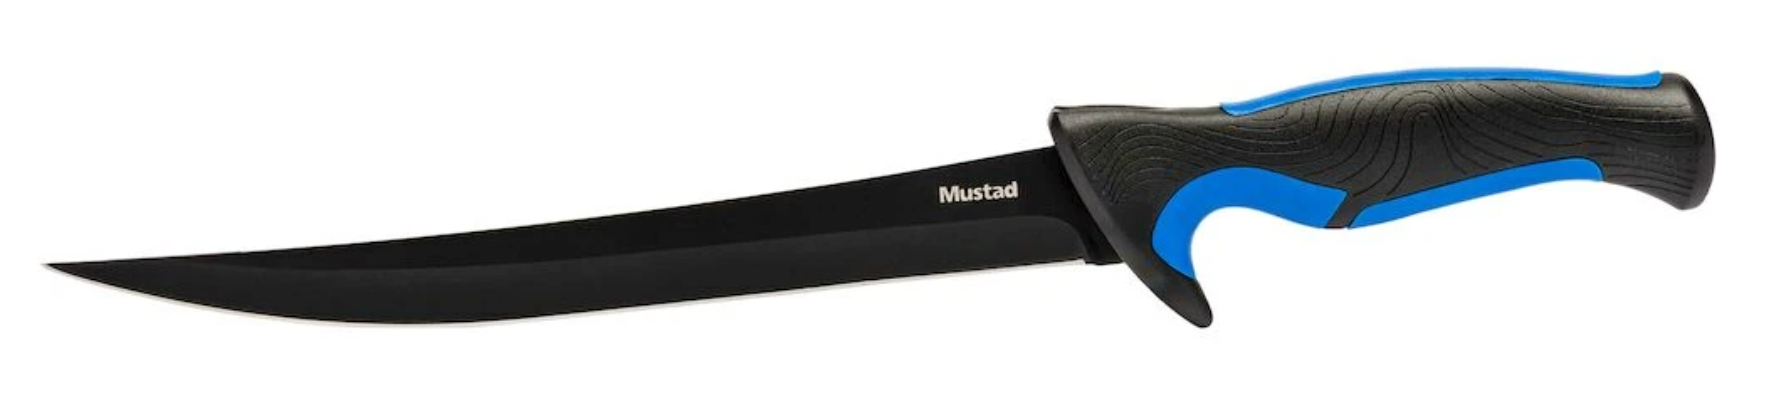 Mustad 3-Piece Fillet & Boning Knife Kit w/ Sharpener